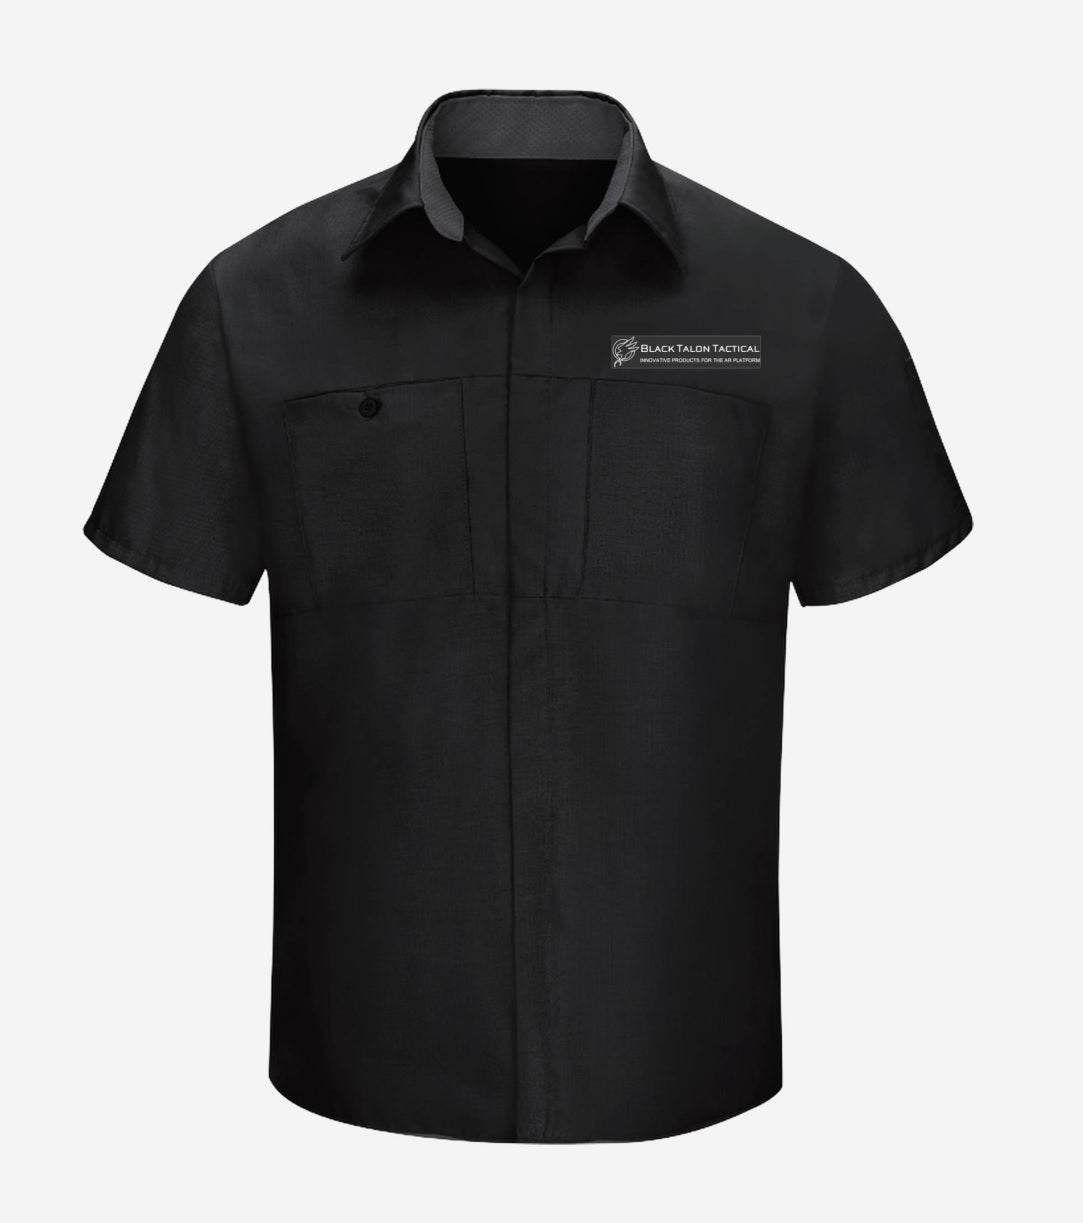 Short Sleeve Button Up Shirt – Black Talon Tactical